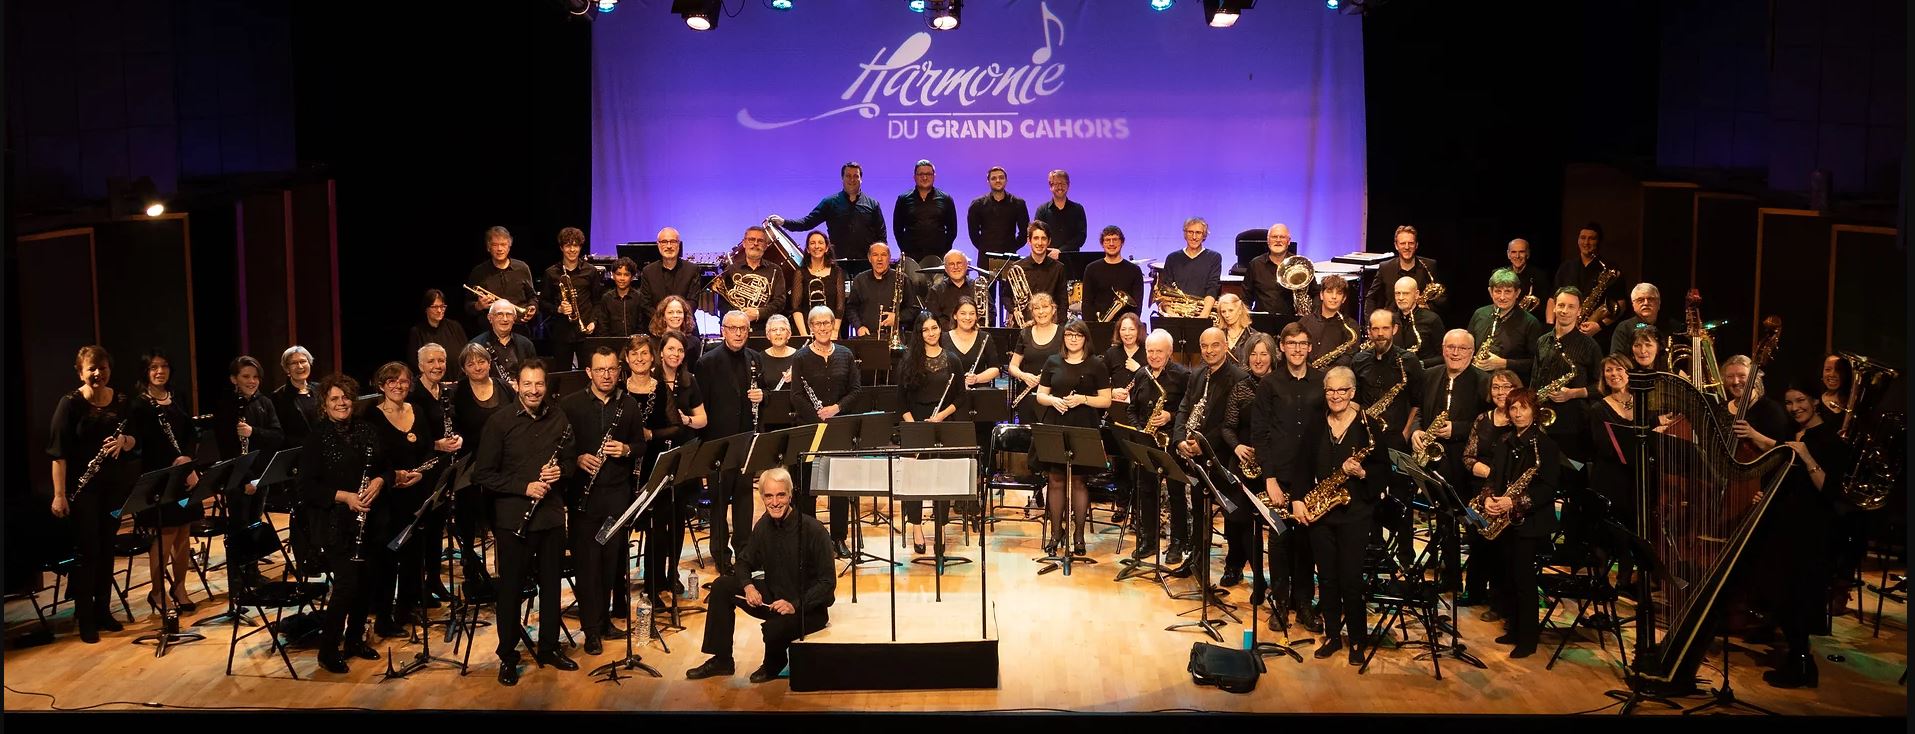 Concert de l'Harmonie du Grand Cahors